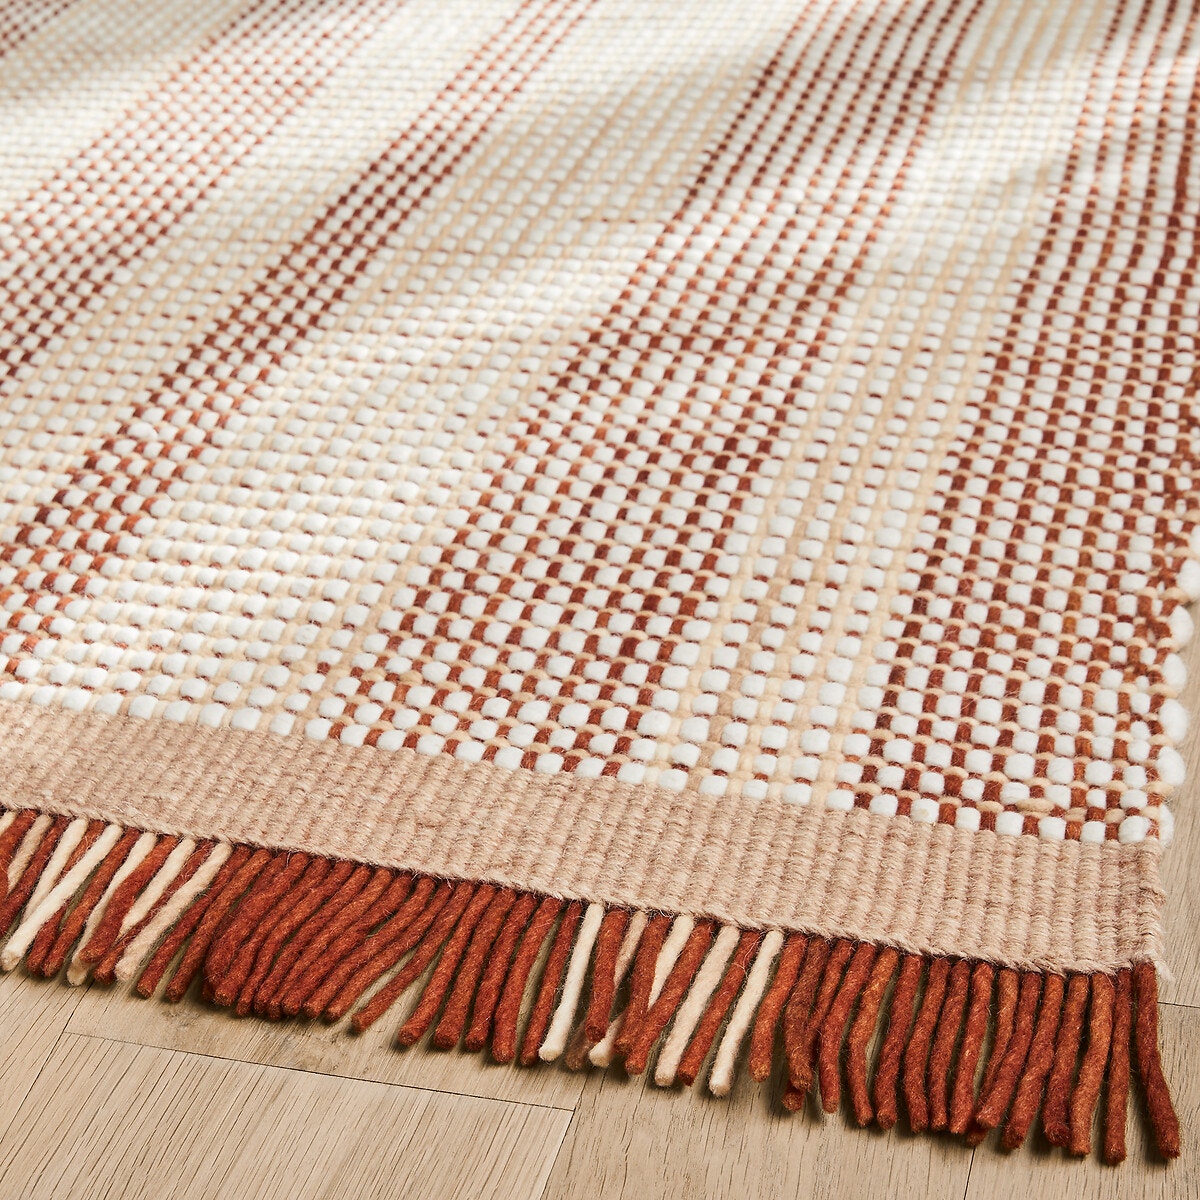 Le tapis jute artisanal rayures tressées Voir nos formats offerts